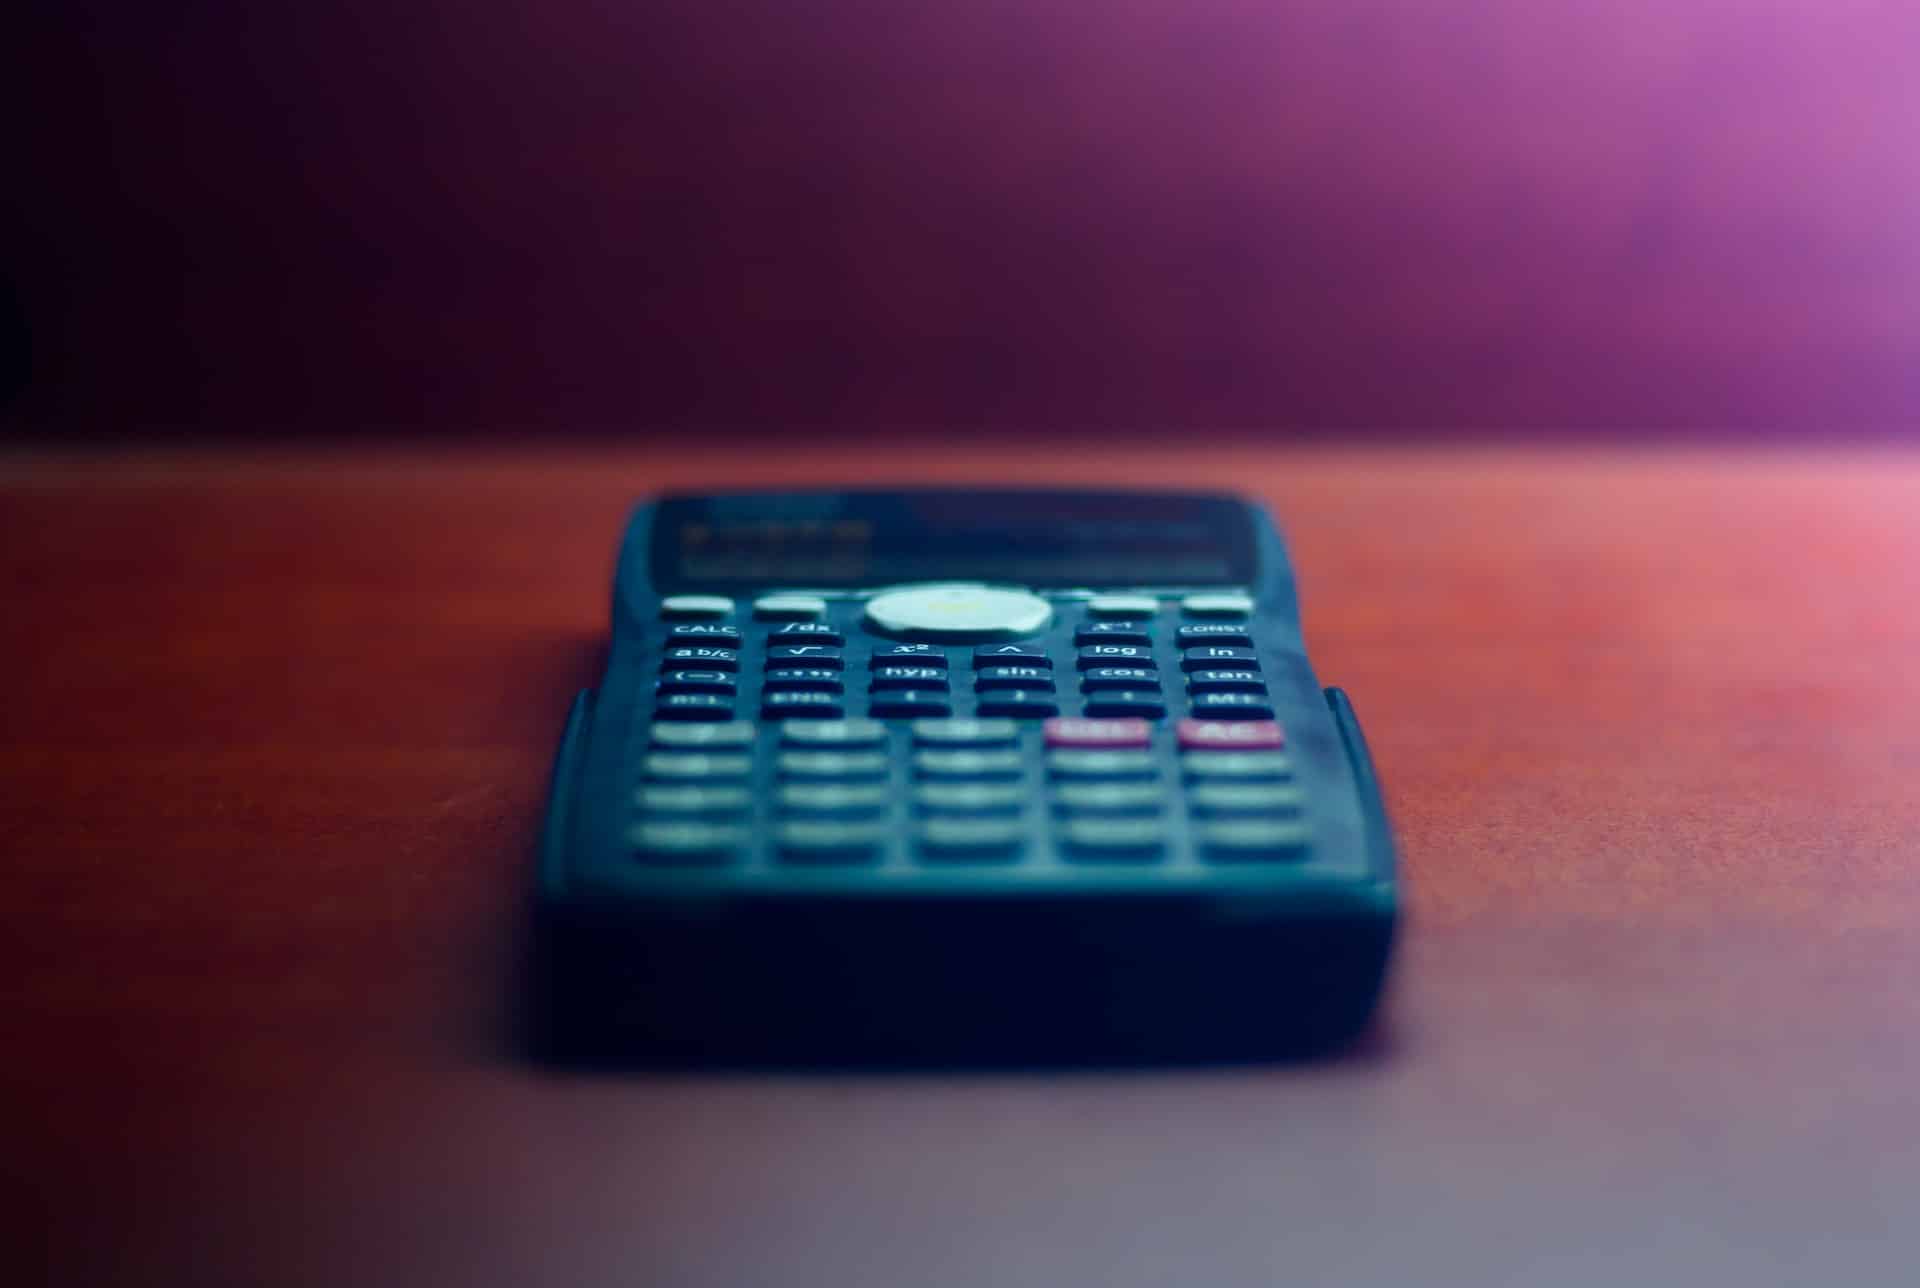 calculator sitting on a desk